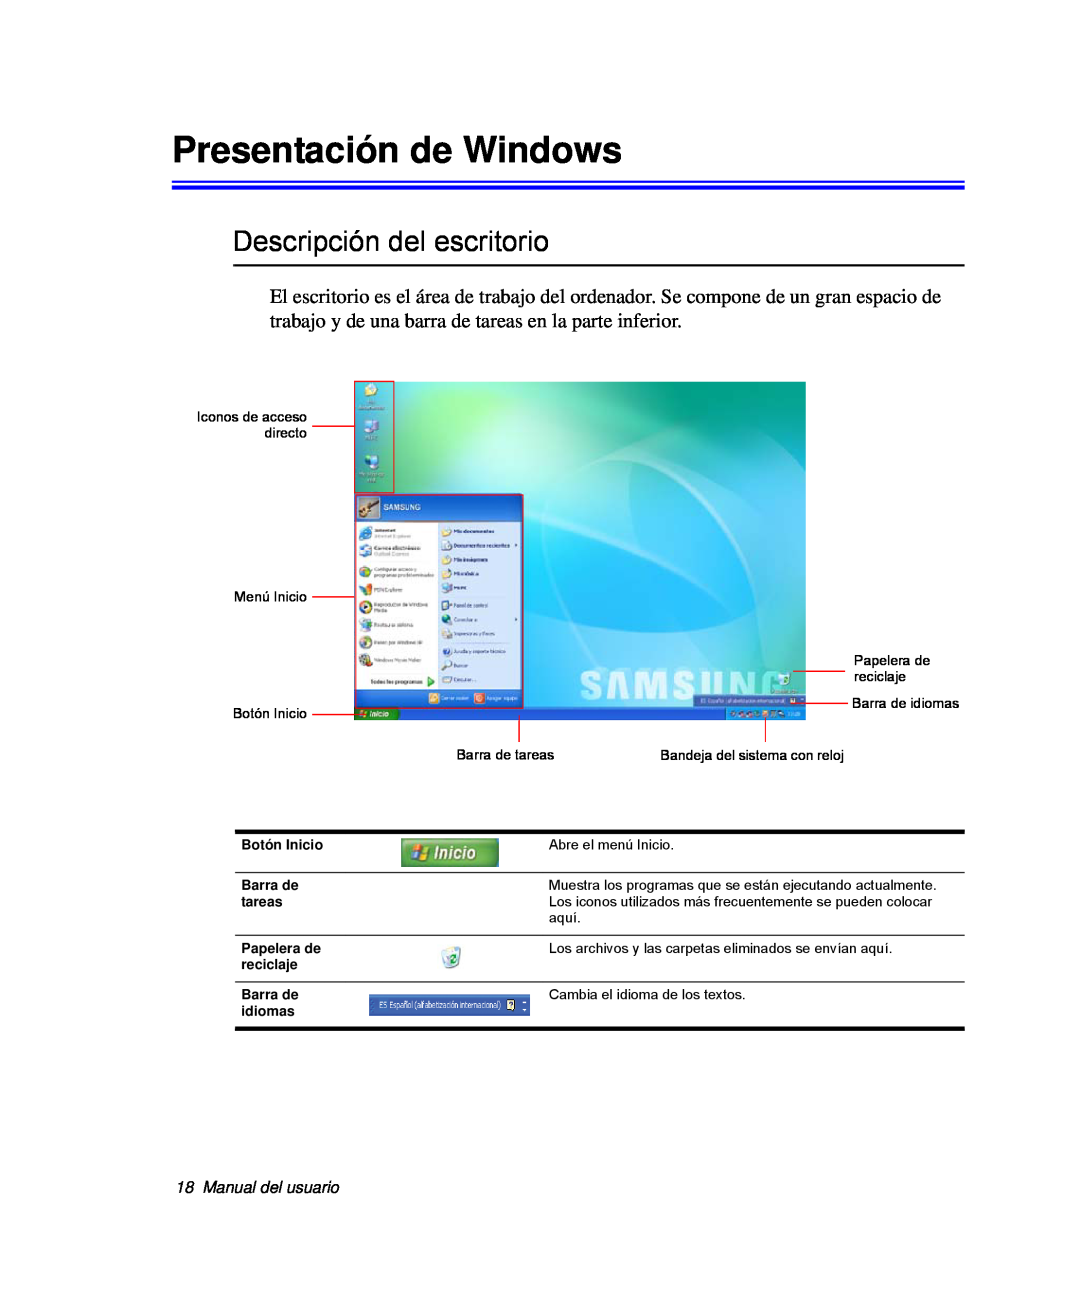 Samsung NP-Q30T003/SES, NP-Q30TY02/SES manual Presentación de Windows, Descripción del escritorio, Manual del usuario 